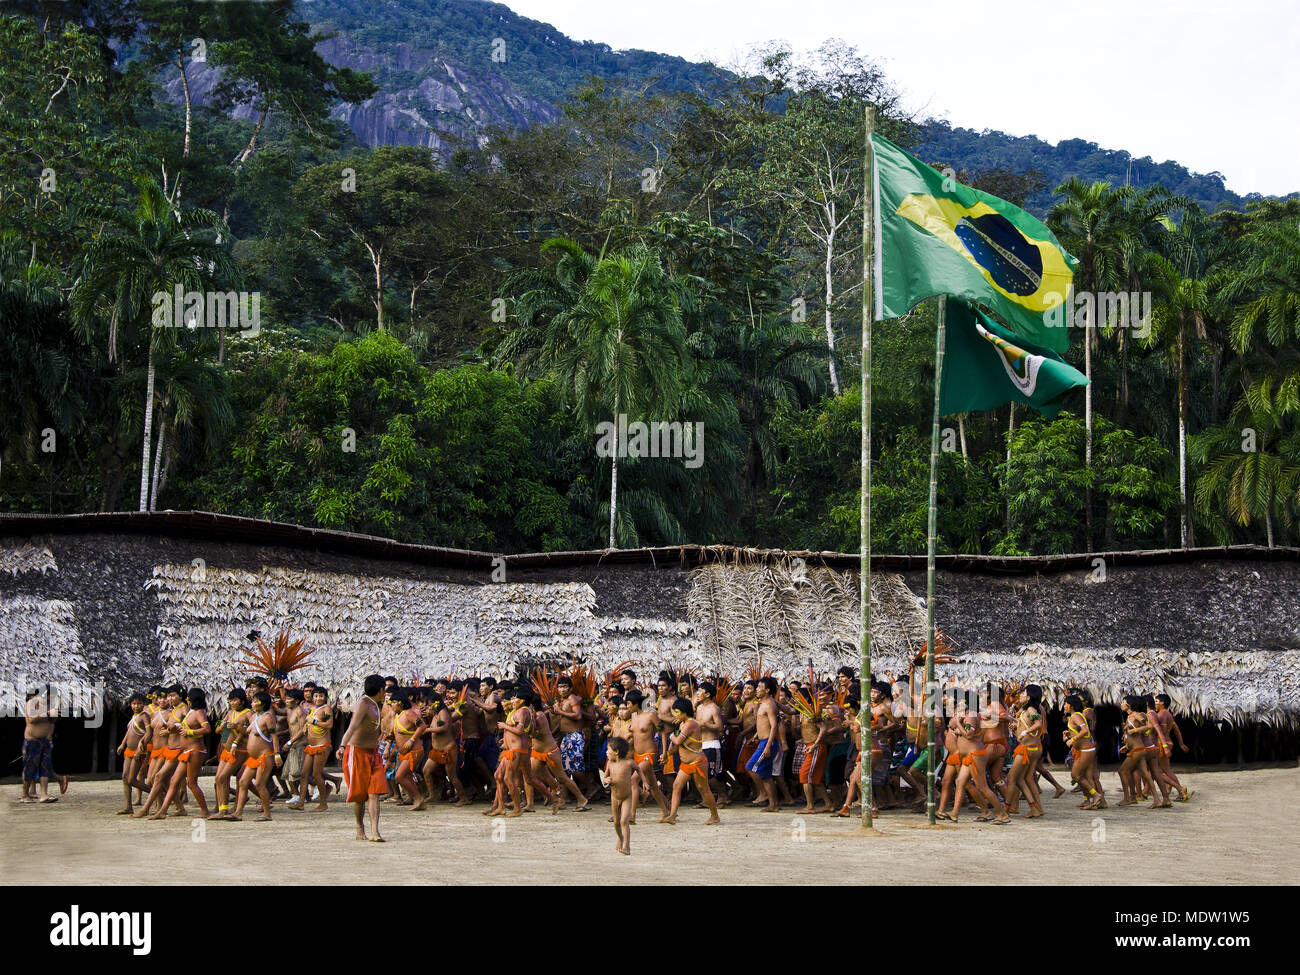 Los indios bailando en celeBrazilation de 2'0 años de demarcación TIY - Terra indígena Yanomami Foto de stock